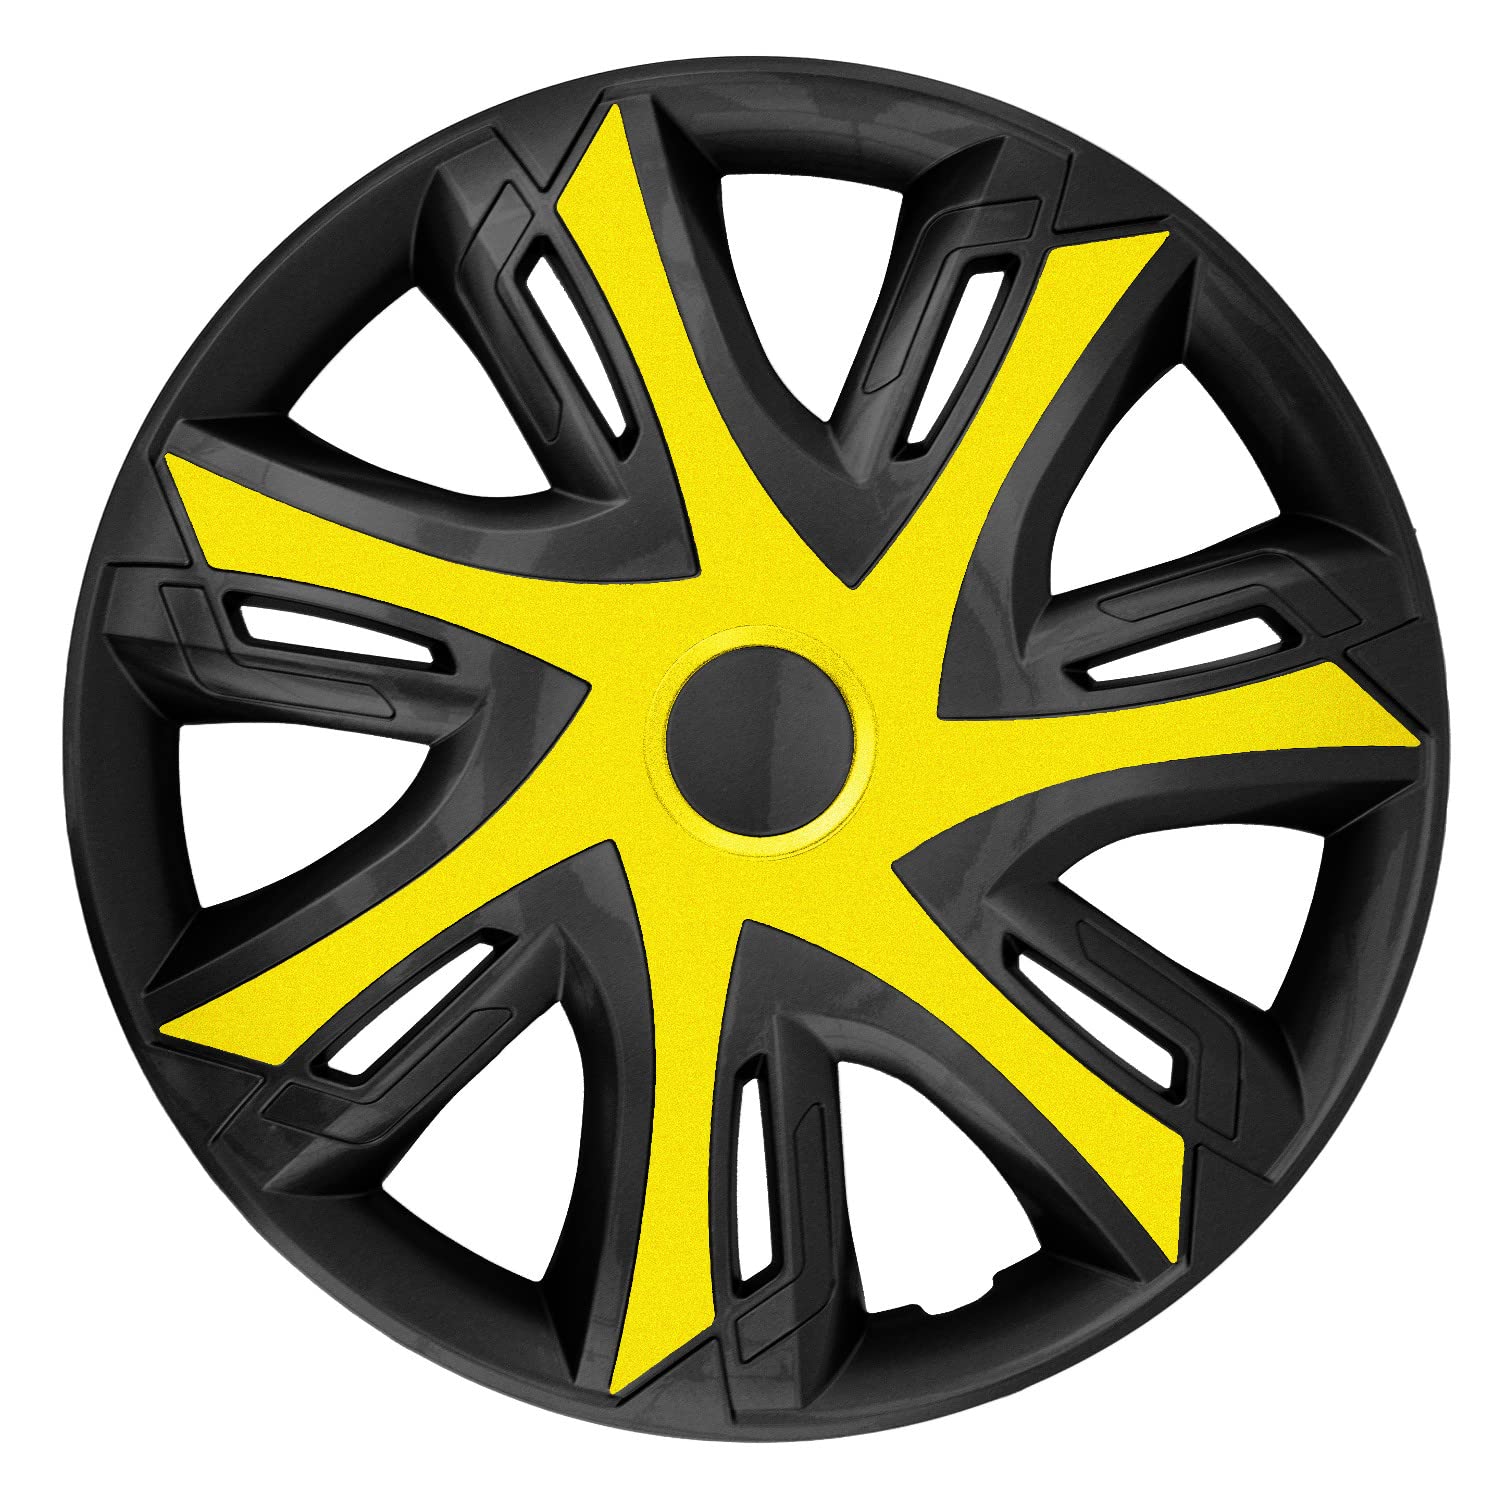 NRM N-Power Radzierblenden für Stahlfelgen Zweifarbige Radkappen Satz 4er Set Auto KFZ Fahrzeug Geeignet ür die meisten Marken und Felgen ABS-Kunststoff (Gelb/schwarz, 14") von NRM